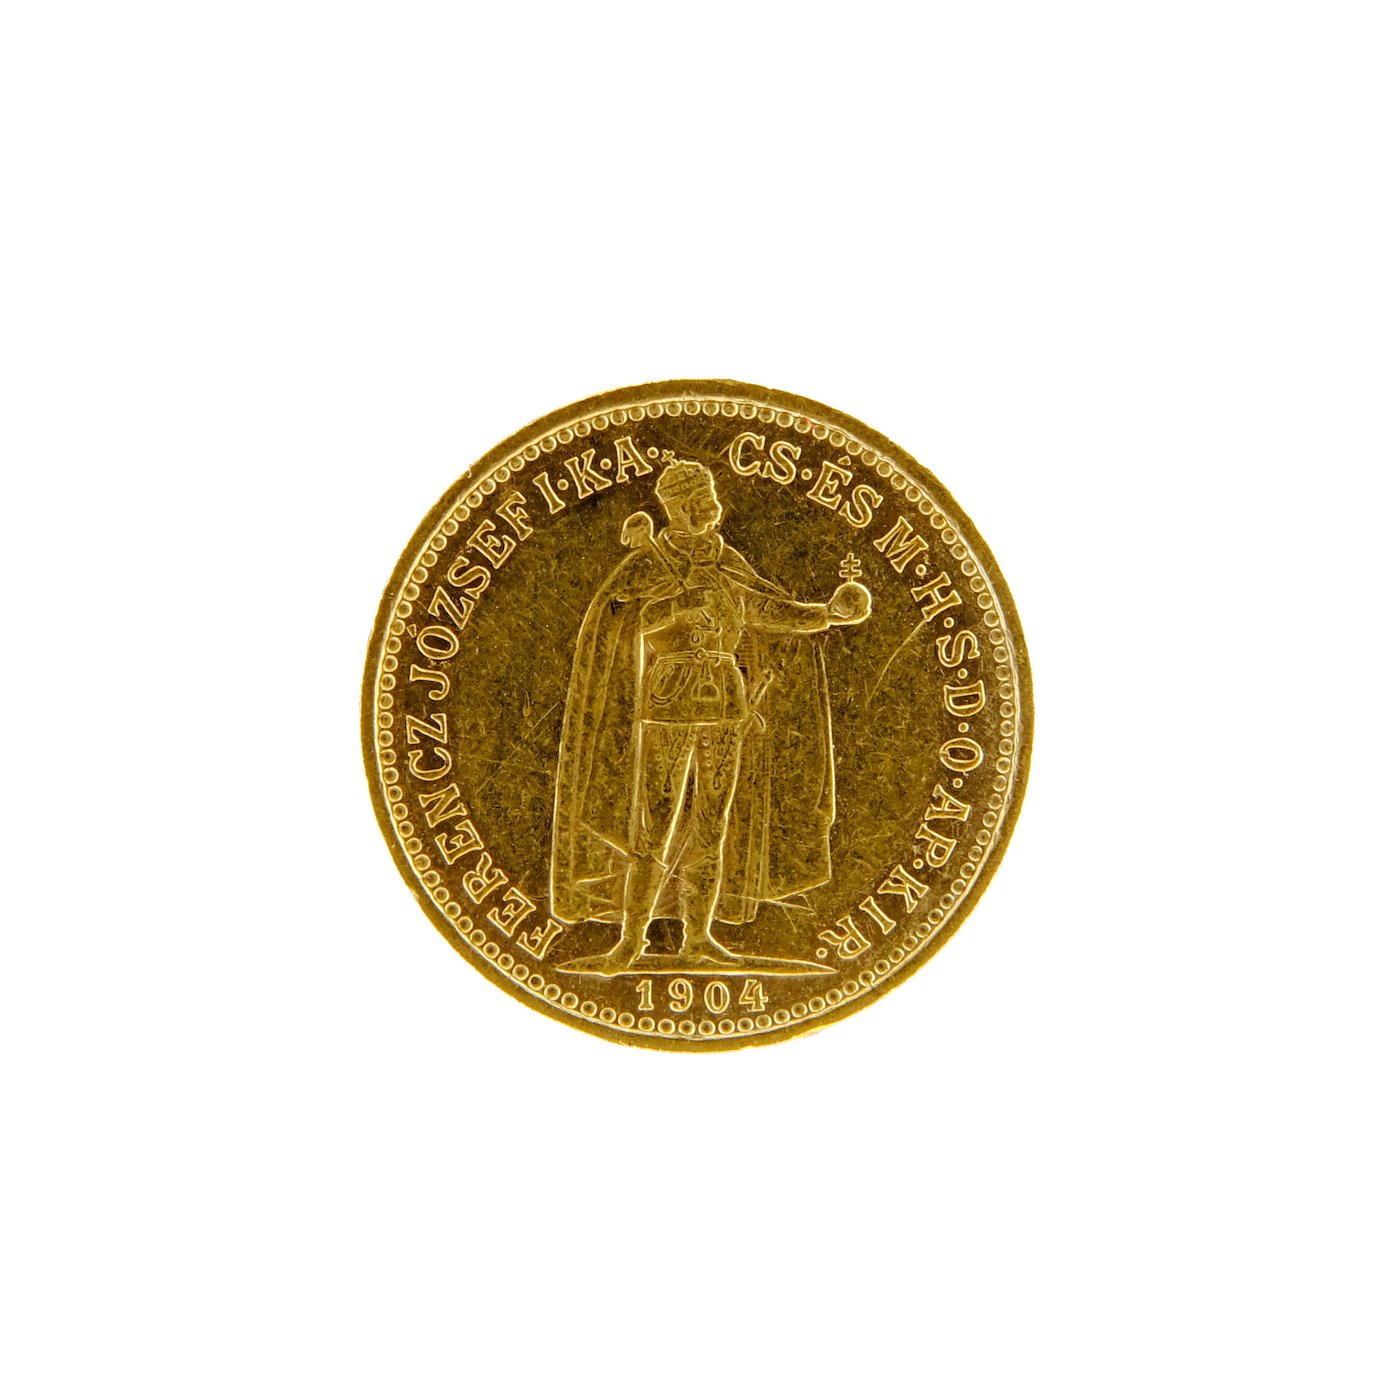 Mince - Rakousko Uhersko zlatá 10 Koruna 1904 K.B. uherská. Zlato 900/1000, hrubá hmotnost mince 3,387g